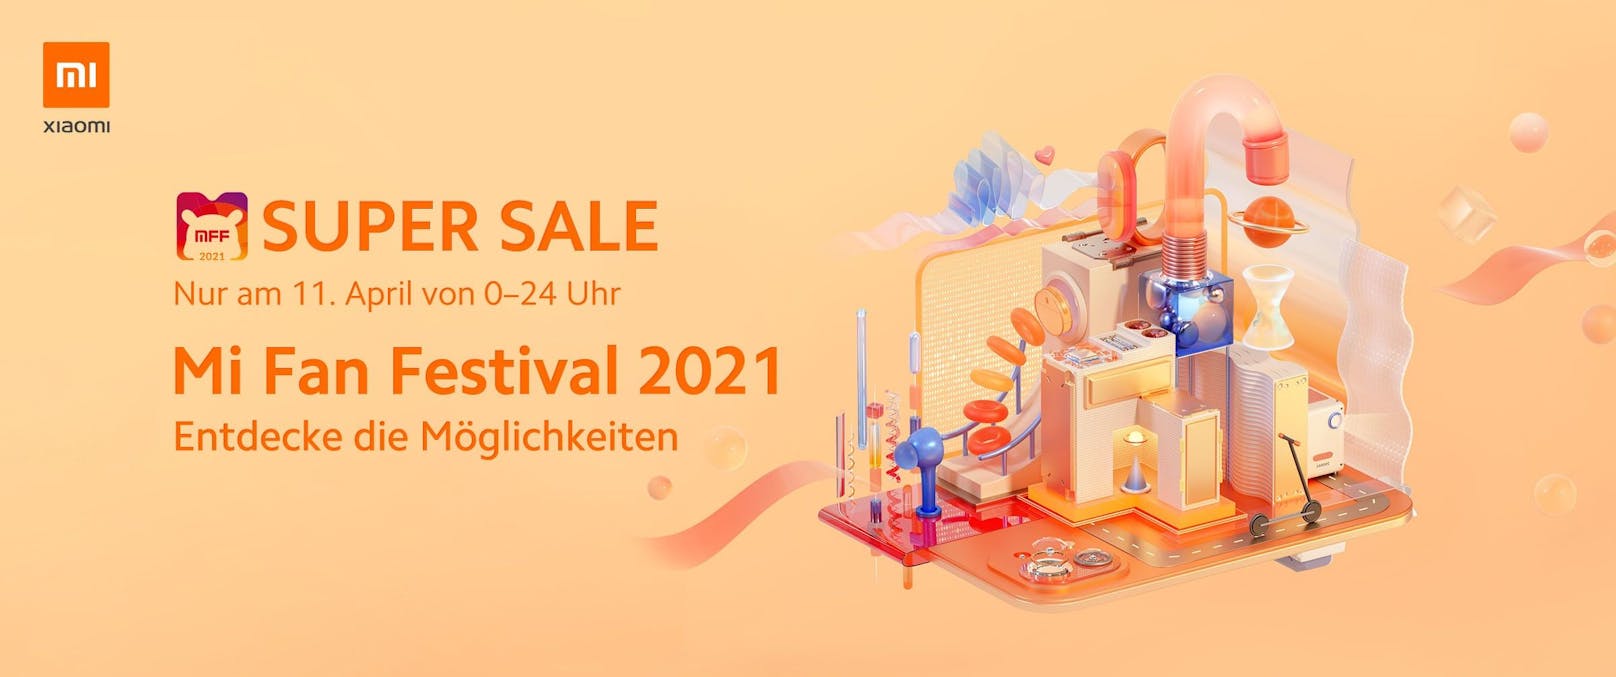 Xiaomi feiert das Mi Fan Festival 2021.